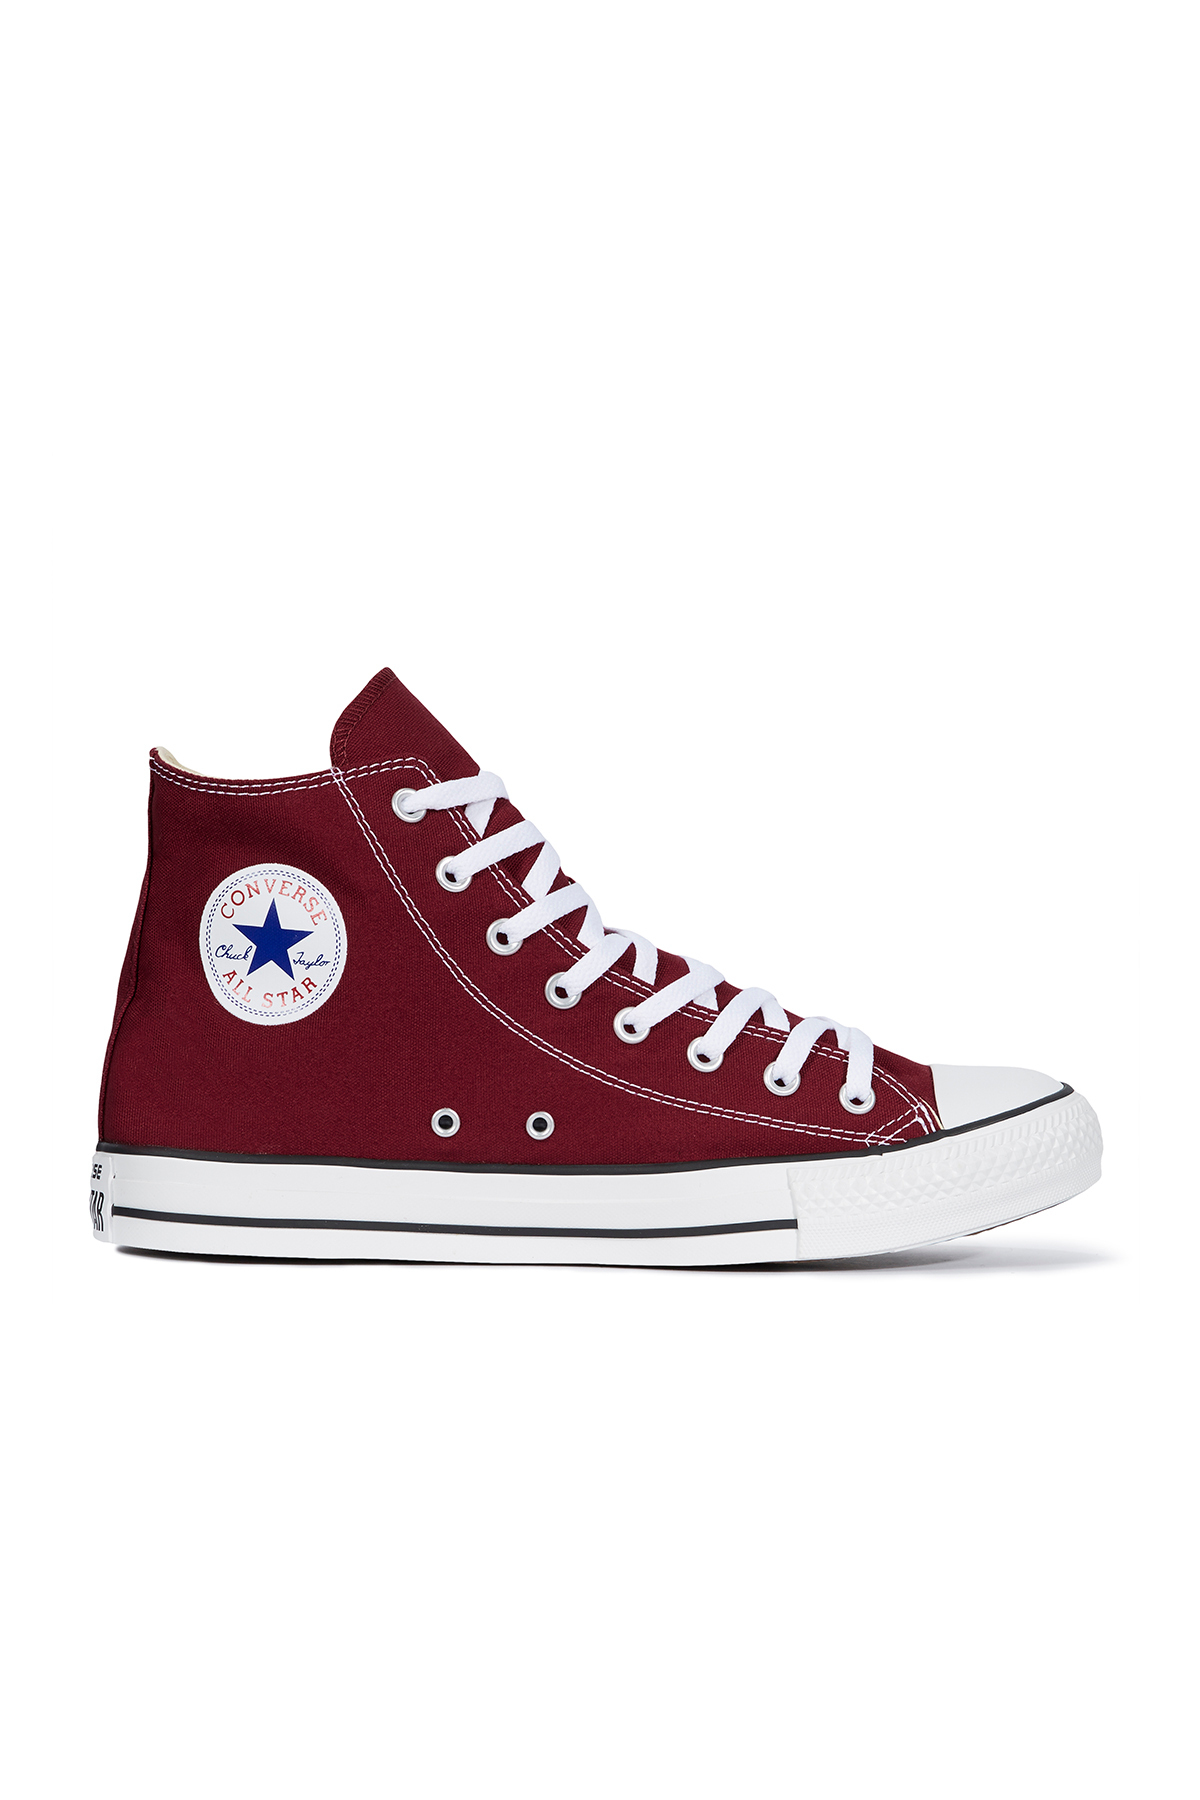 Спортивная обувь унисекс бордово-красного цвета converse, бордовый